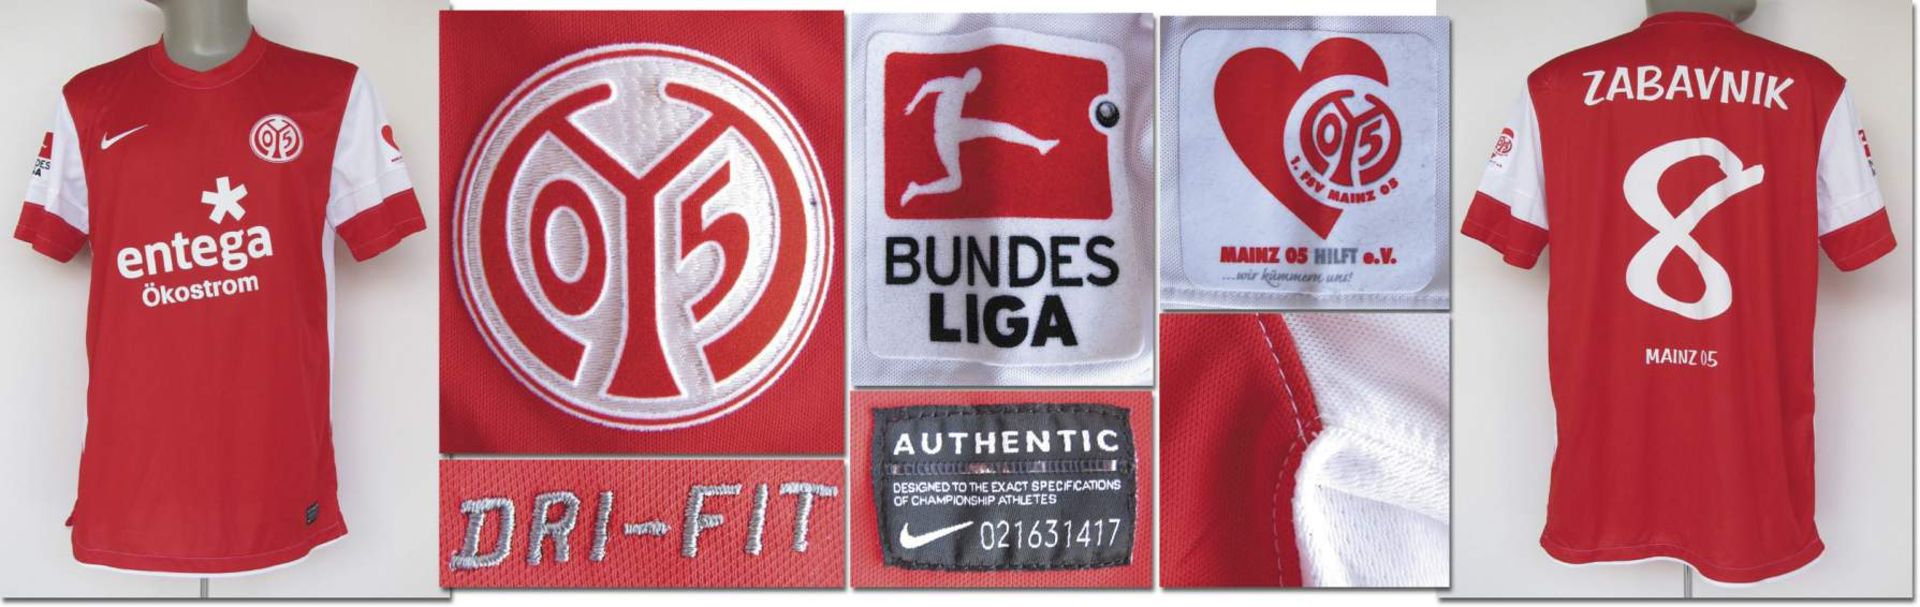 match worn football shirt Mainz 05 2011/12 - Original match worn shirt FSV Mainz 05 with number 8.